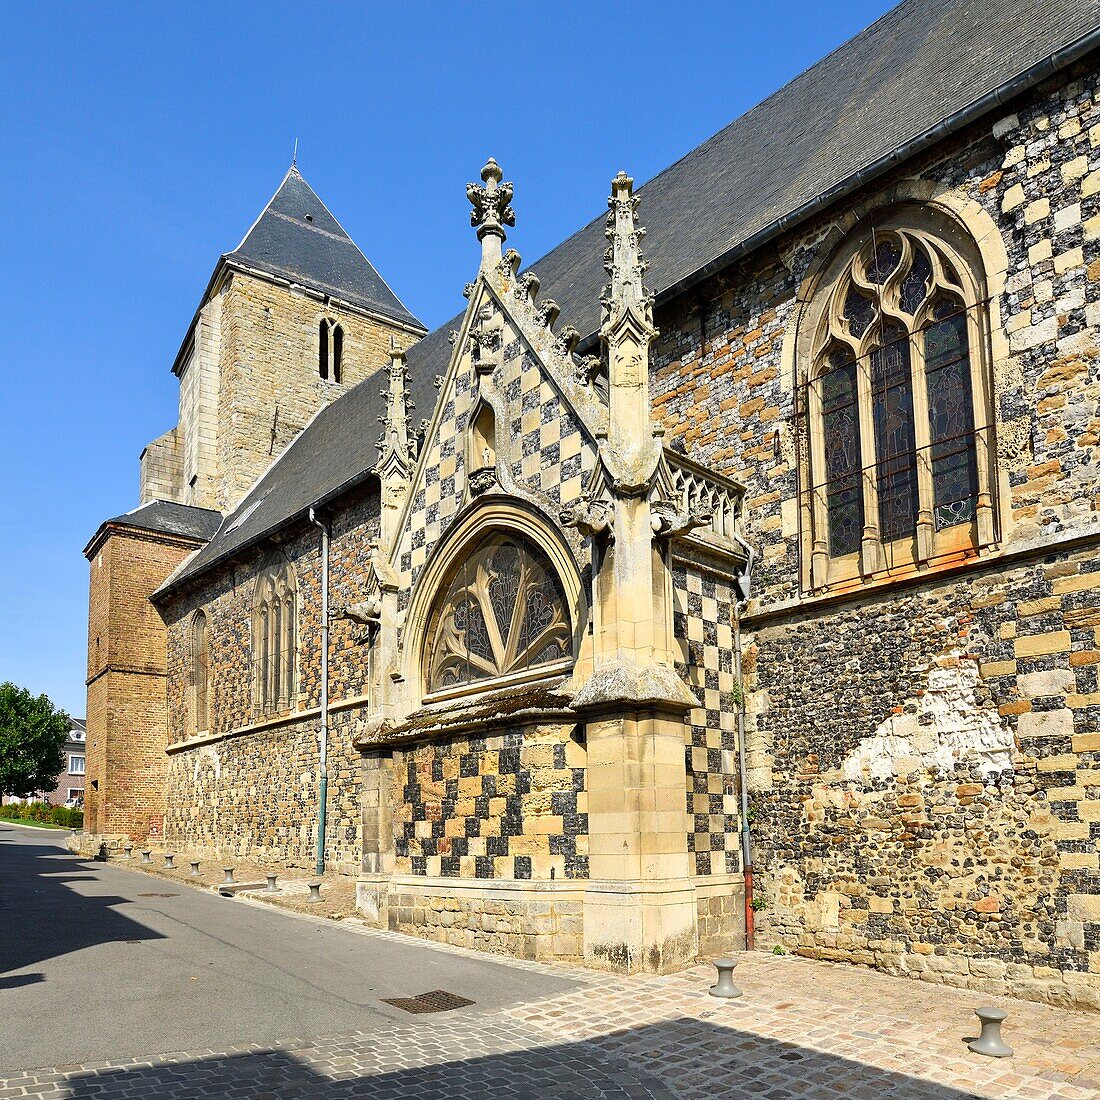 Frankreich,Somme,Baie de Somme,Saint Valery sur Somme,Mündung der Somme-Bucht,Kirche Saint-Martin aus dem 16. Jahrhundert mit einer Zierverkleidung aus Feuerstein und behauenen Steinen in Form eines Windfangs